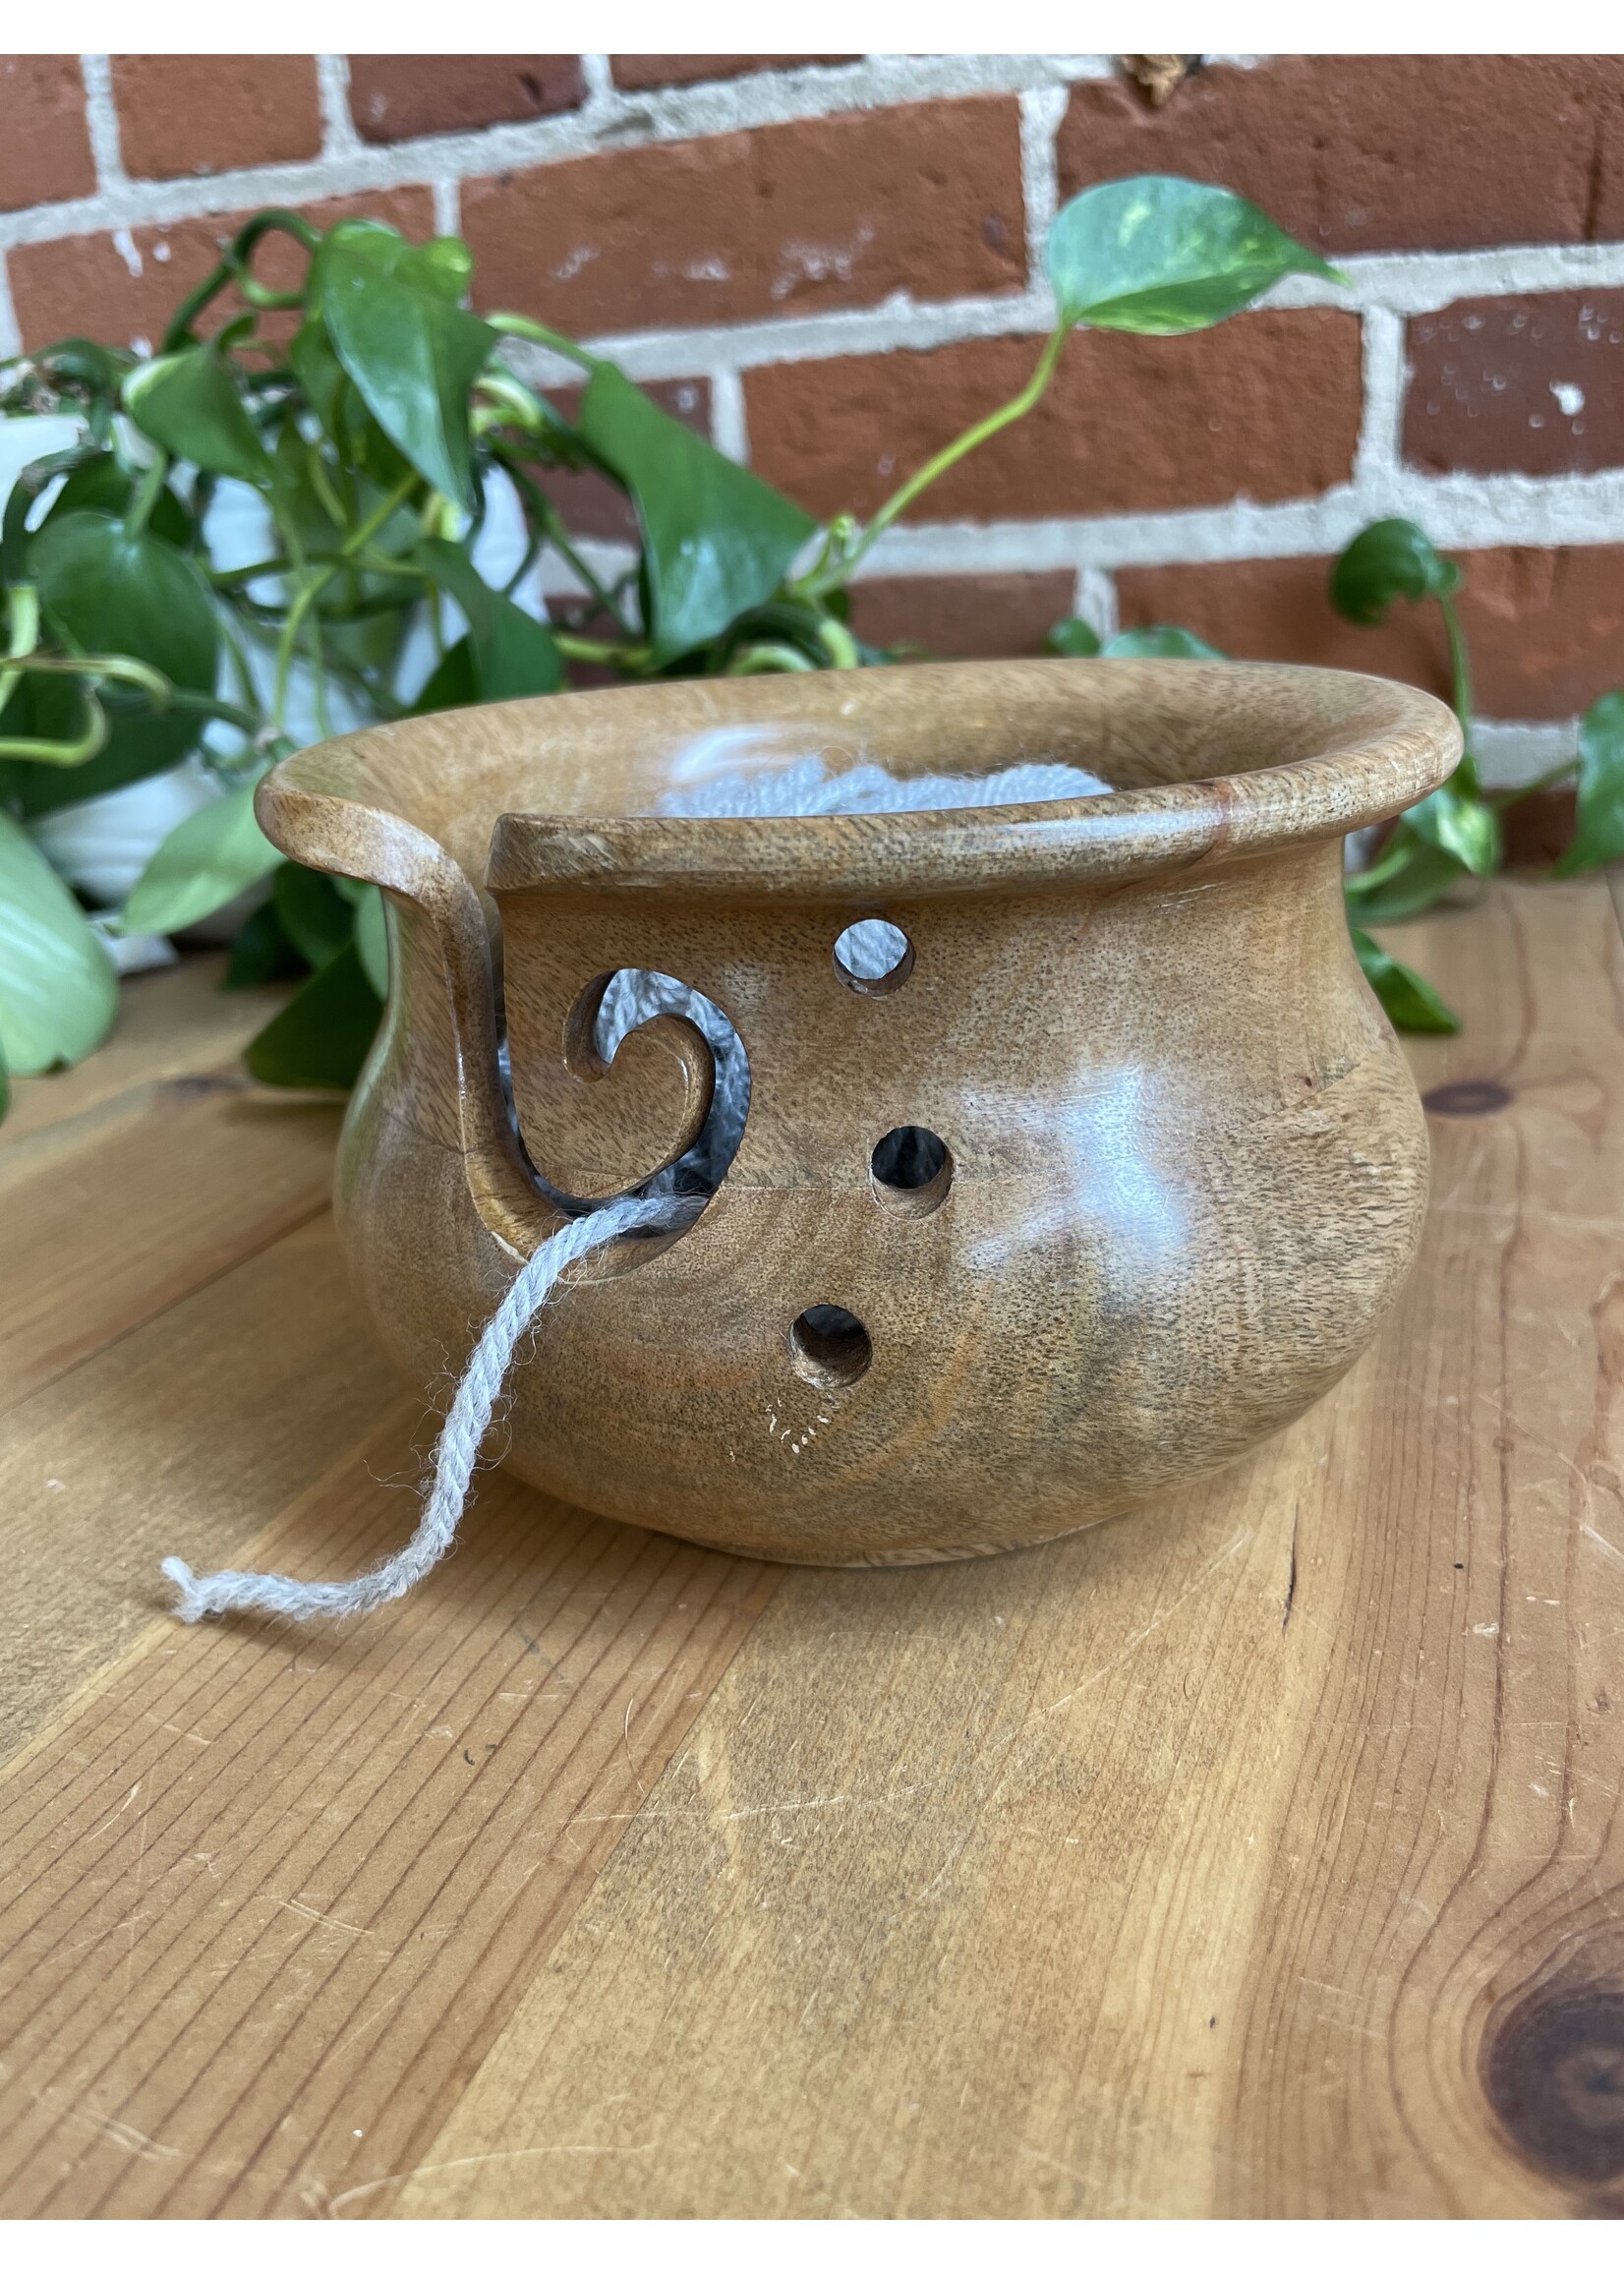 Apple Wood Yarn Bowl – Cynthia Wood Spinner